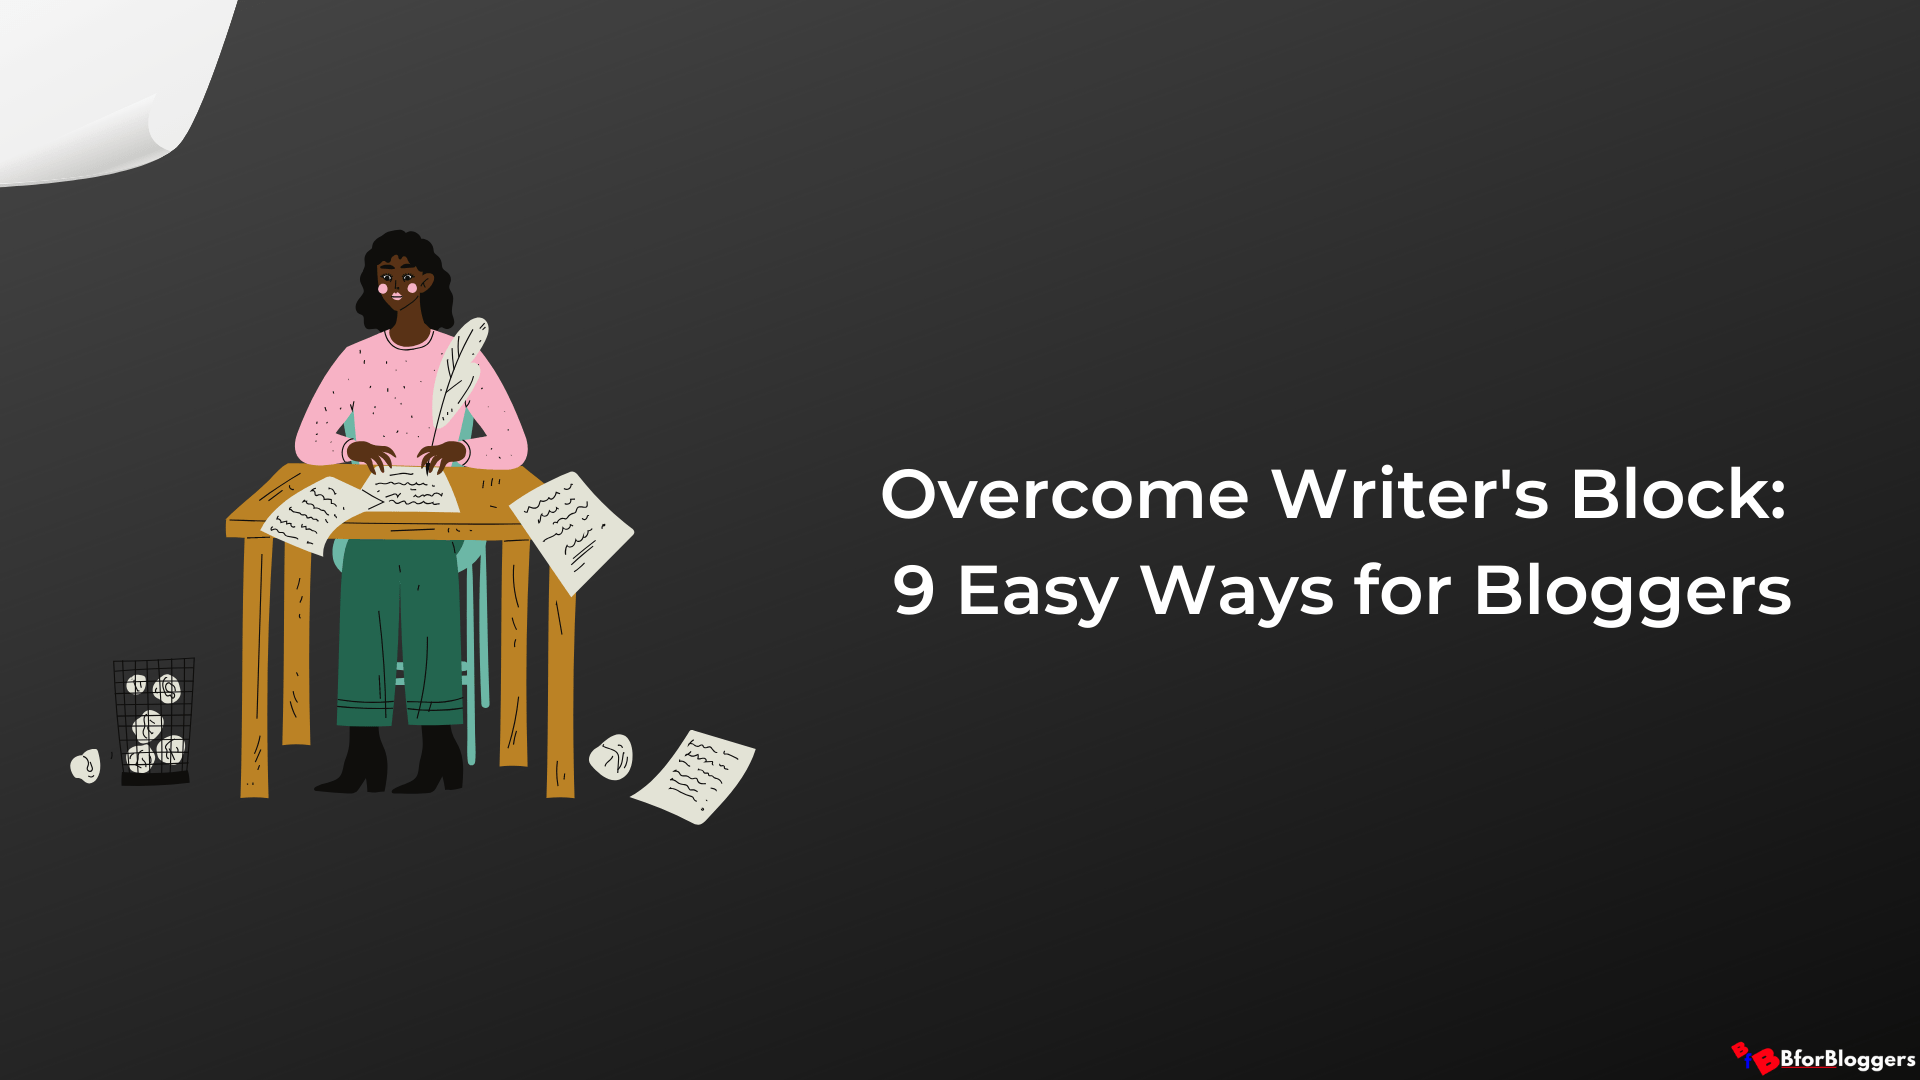 Prekonajte spisovateľský blok: 9 spôsobov, ako prekonať blikajúci kurzor